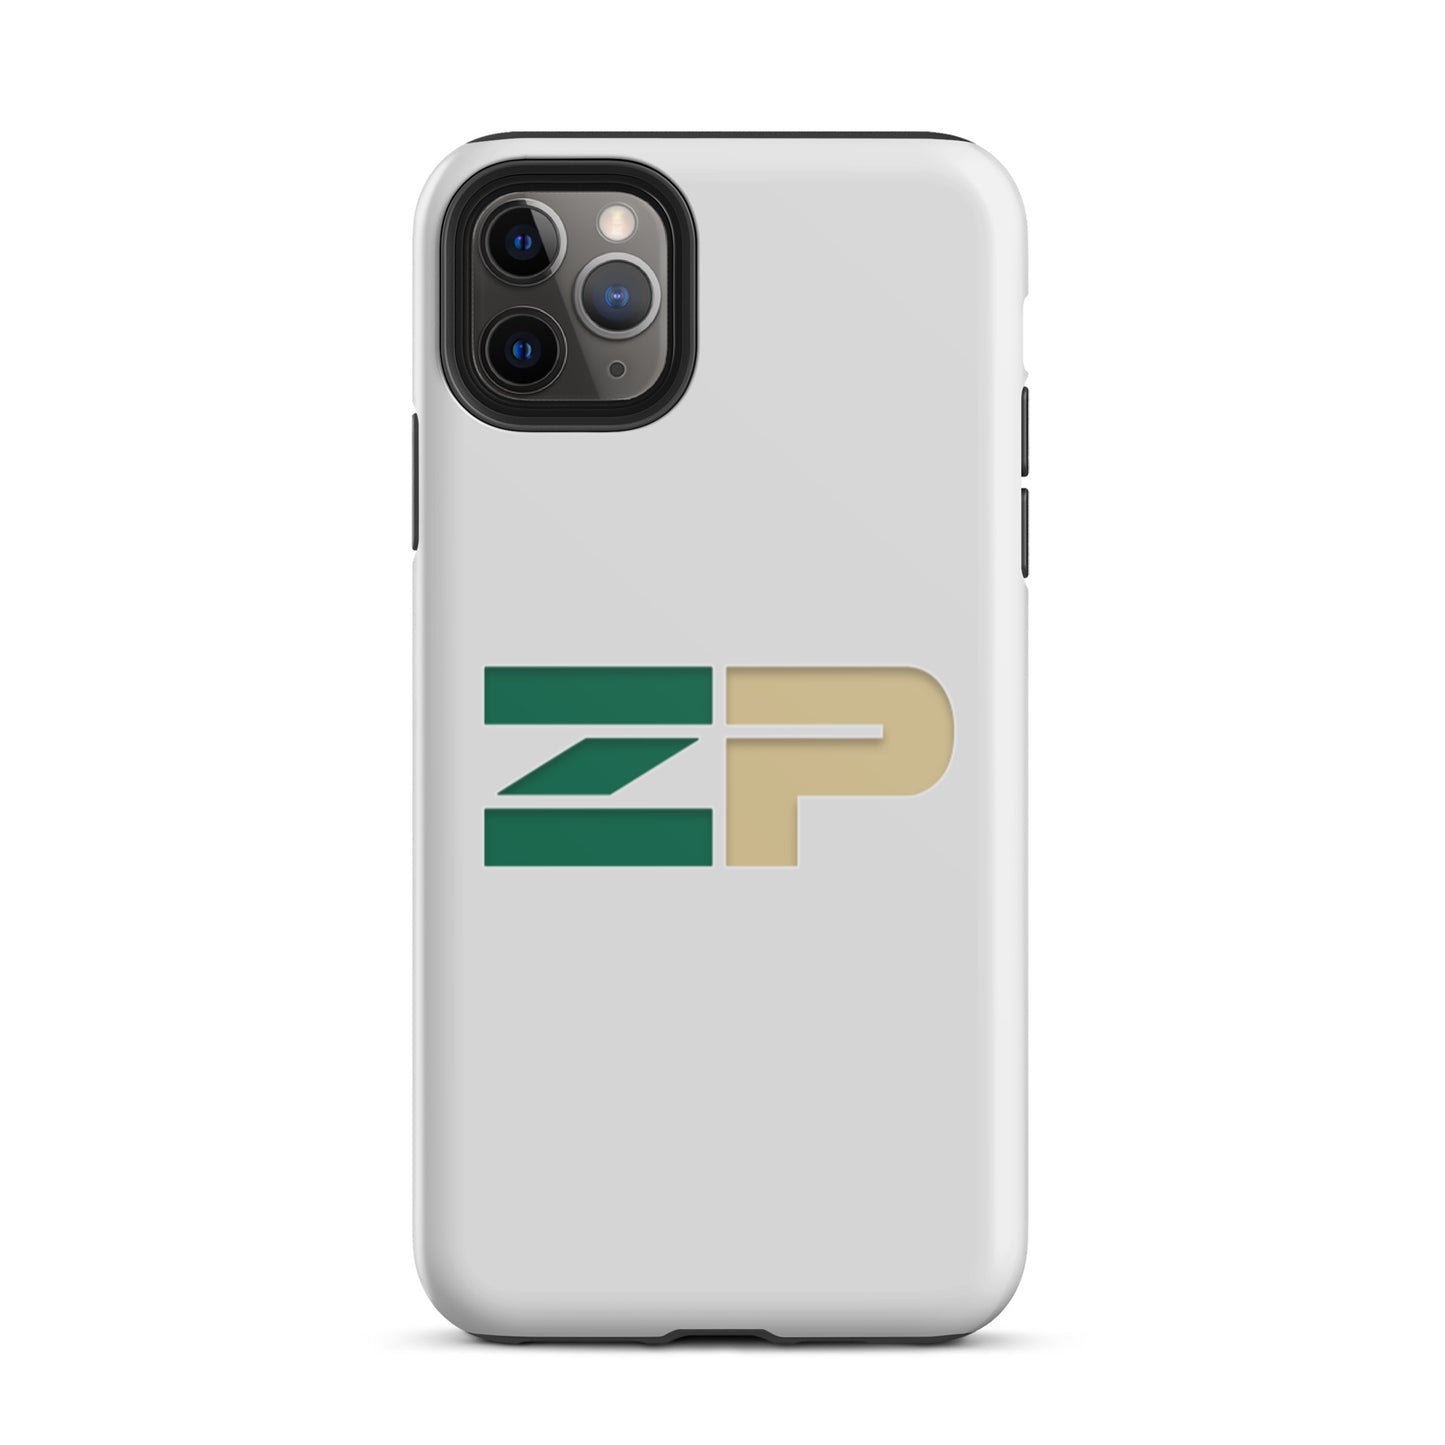 ZP Tough iPhone case